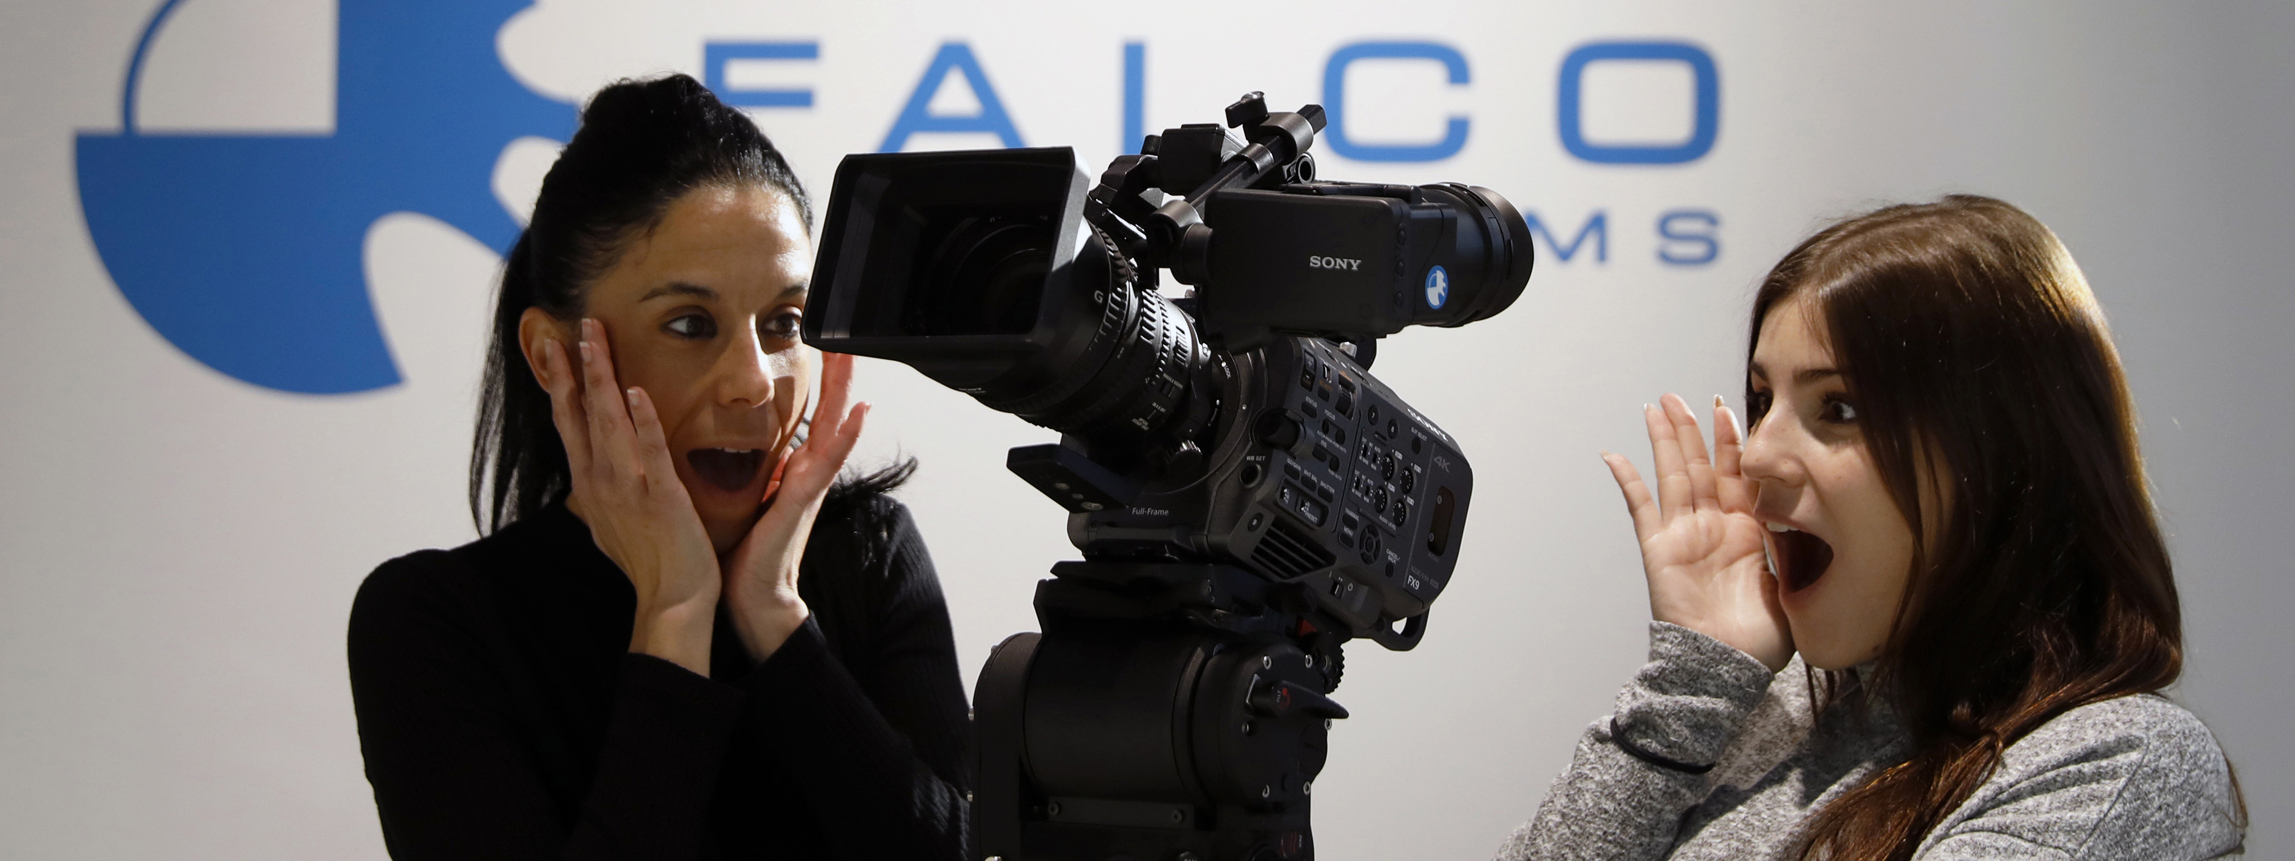 Falcofilms :: Productos en Alquiler